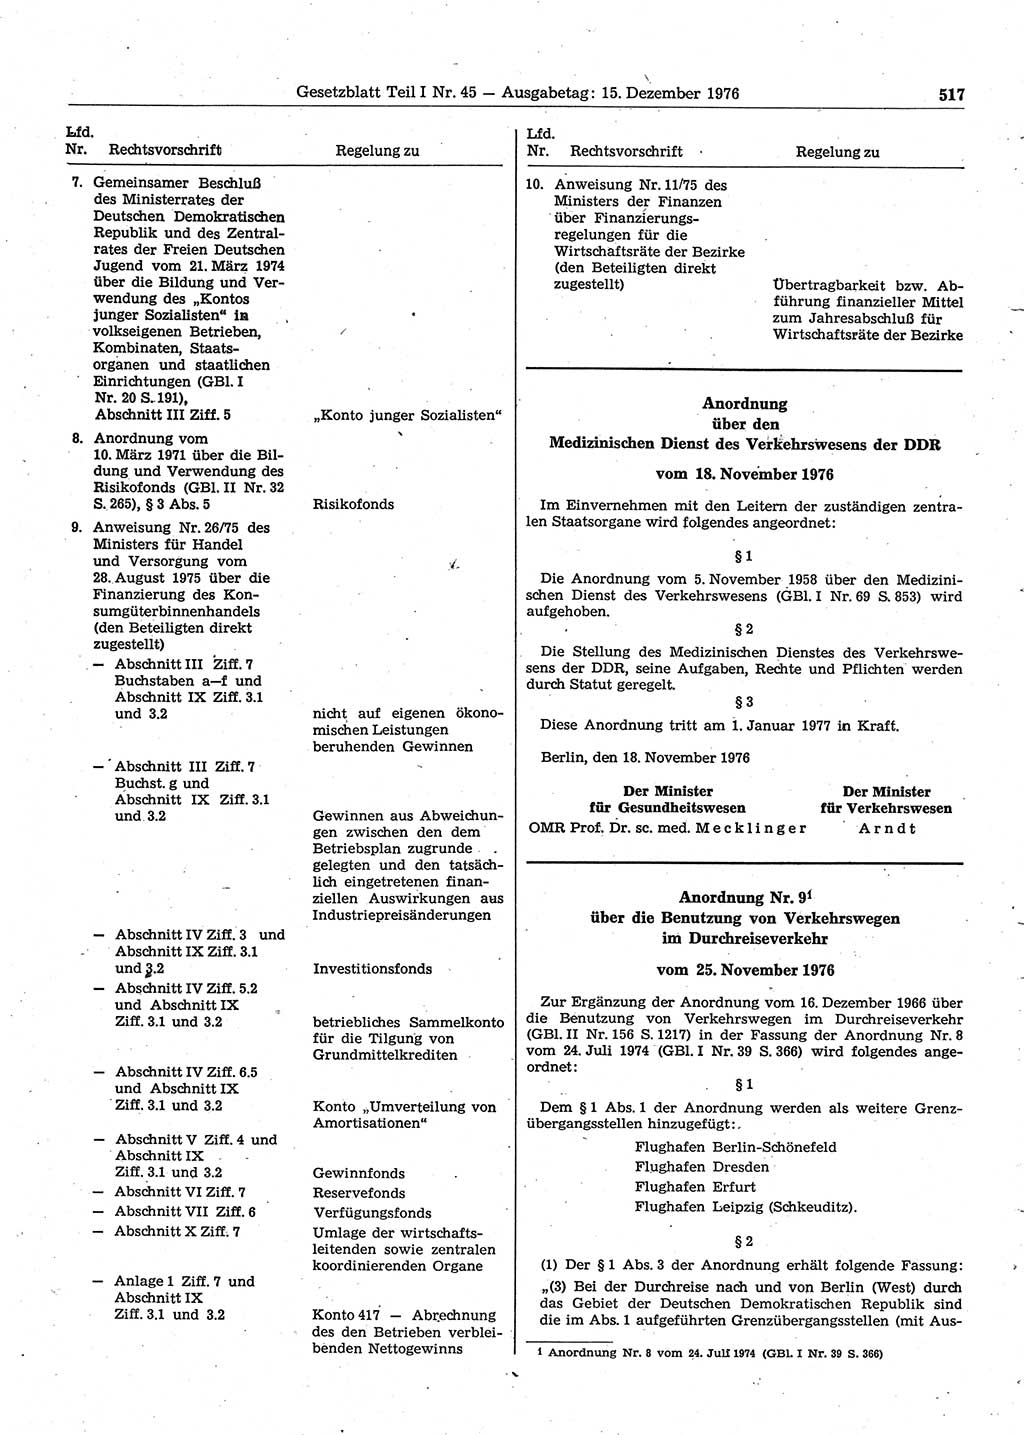 Gesetzblatt (GBl.) der Deutschen Demokratischen Republik (DDR) Teil Ⅰ 1976, Seite 517 (GBl. DDR Ⅰ 1976, S. 517)